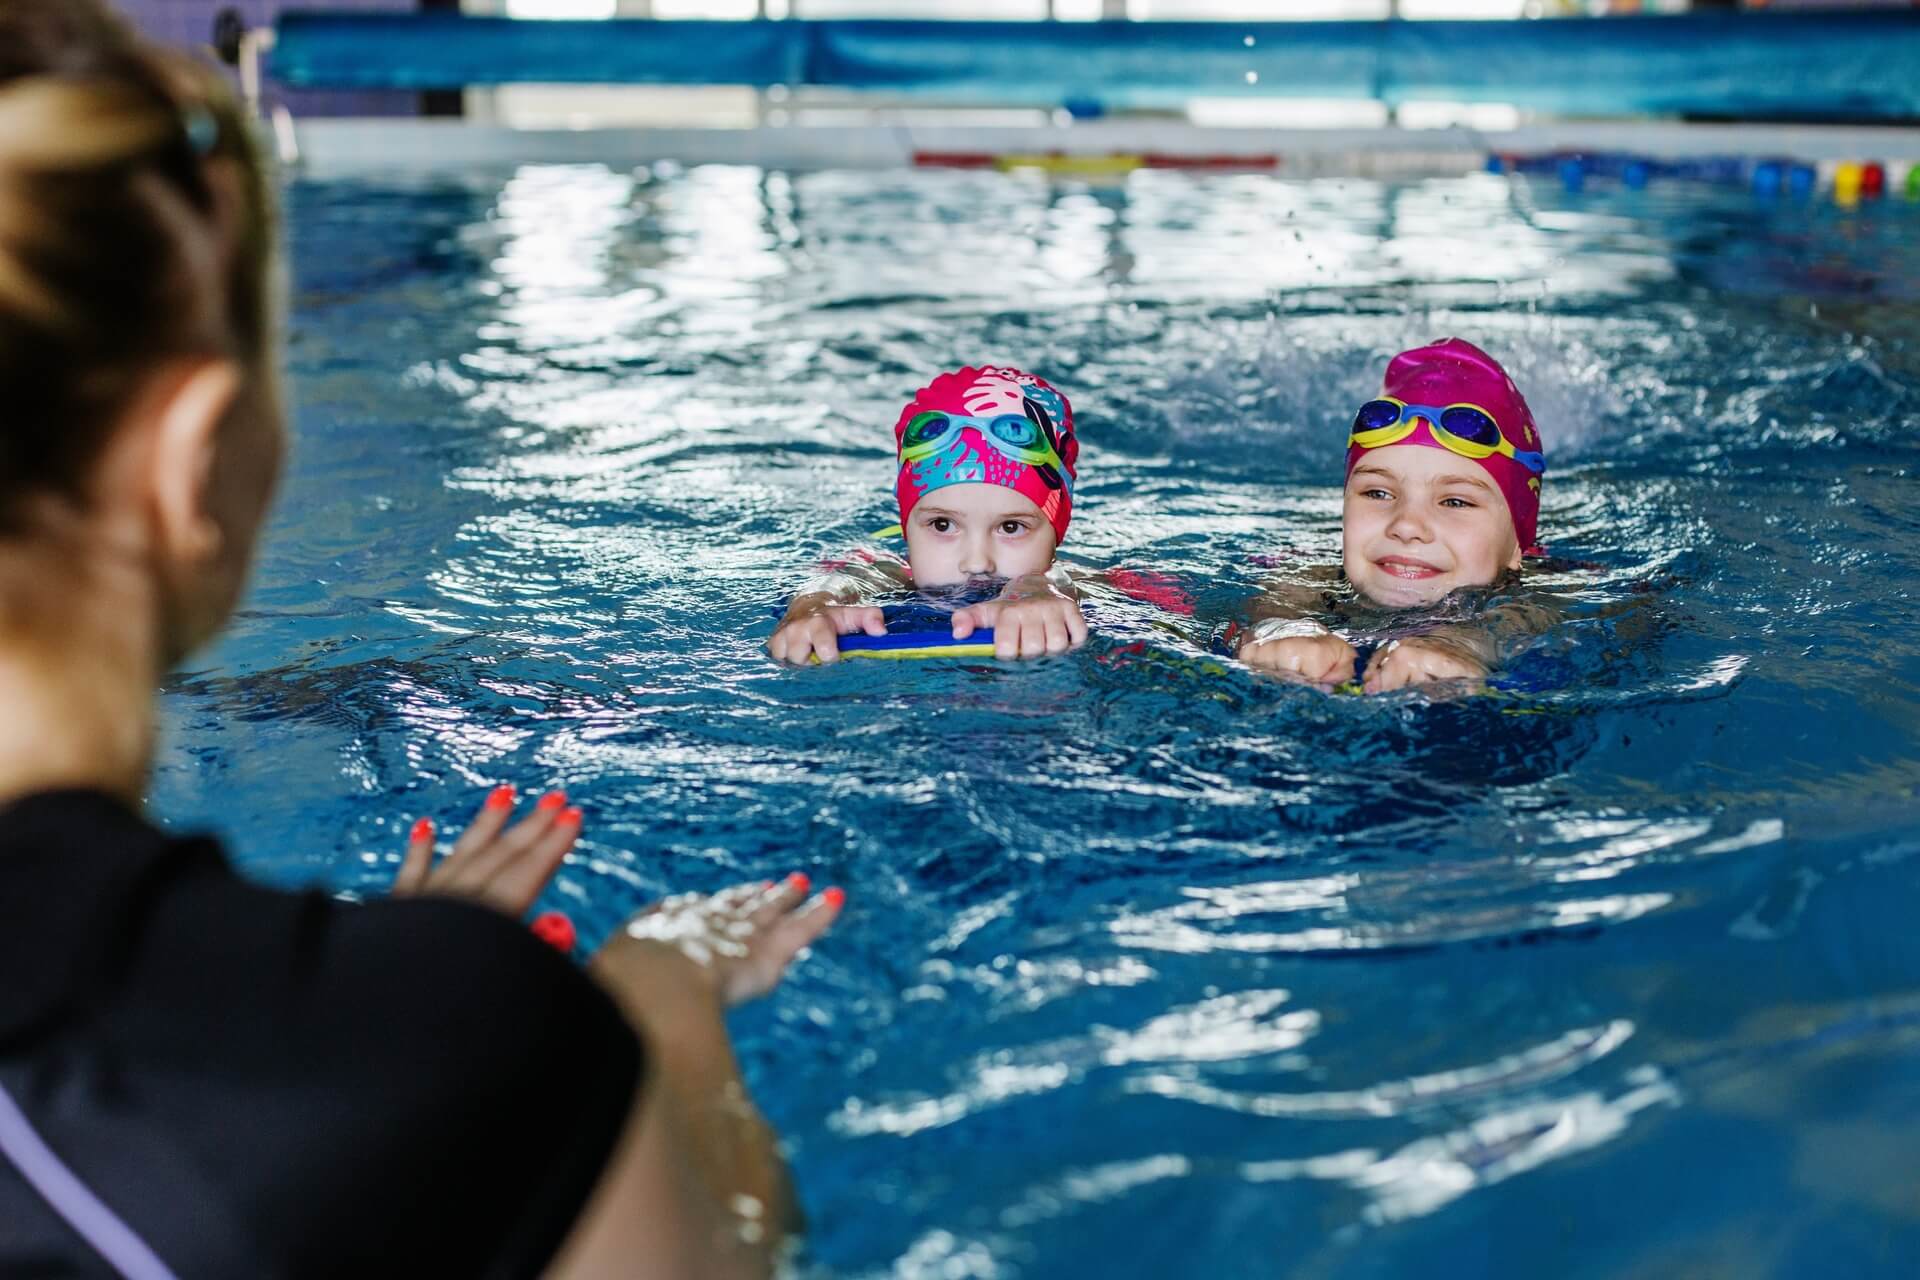 Plaukimo pamokos ir mankštos vandenyje vaikams – norintiems džiaugtis taisyklinga laikysena ir puikia sveikata